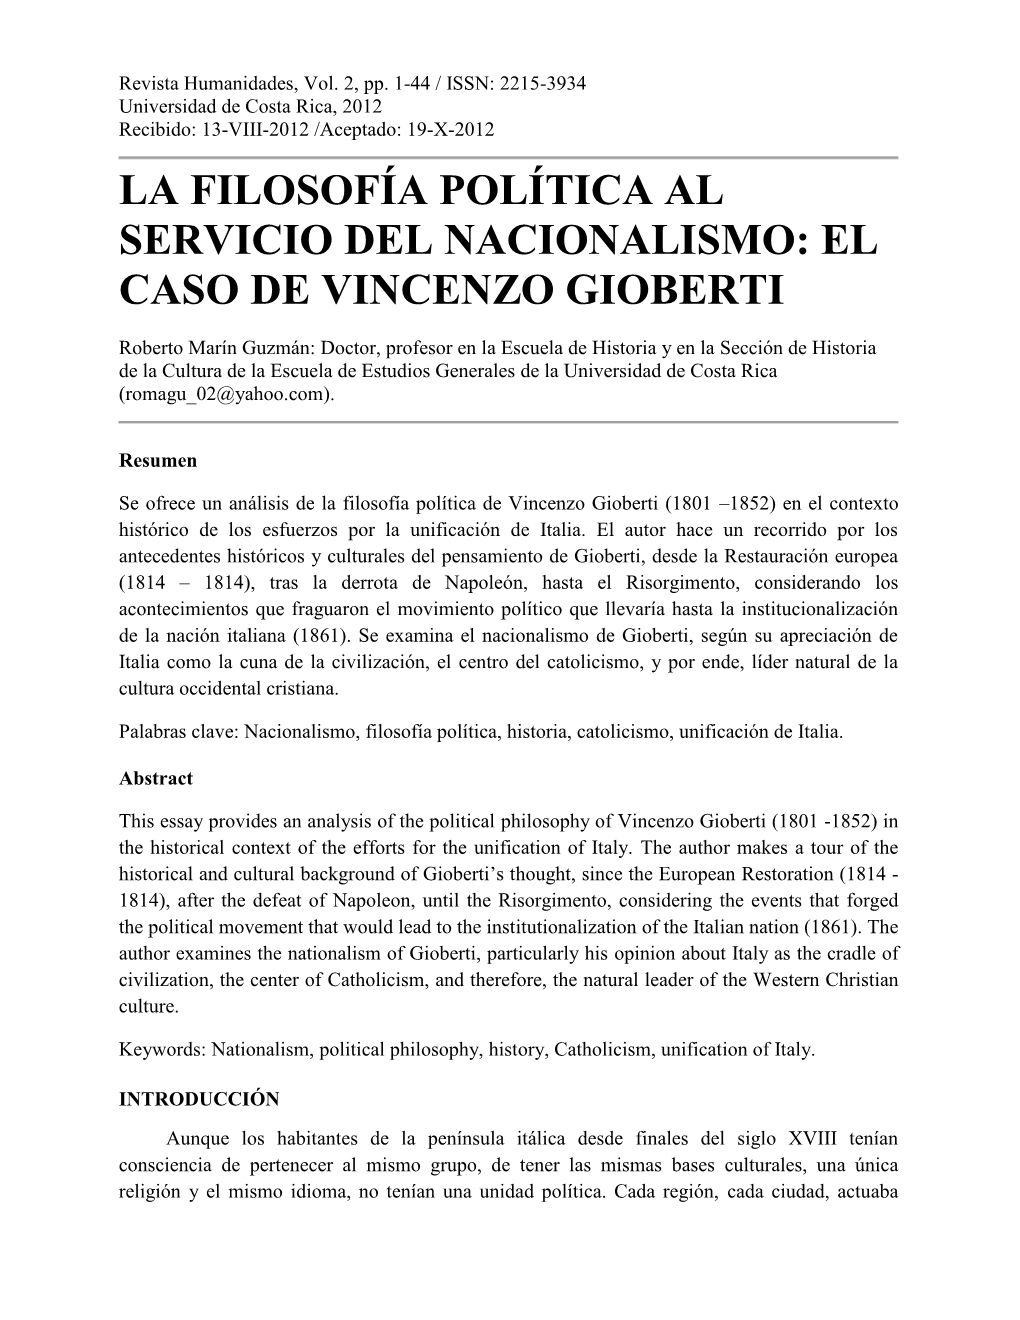 La Filosofía Política Al Servicio Del Nacionalismo: El Caso De Vincenzo Gioberti